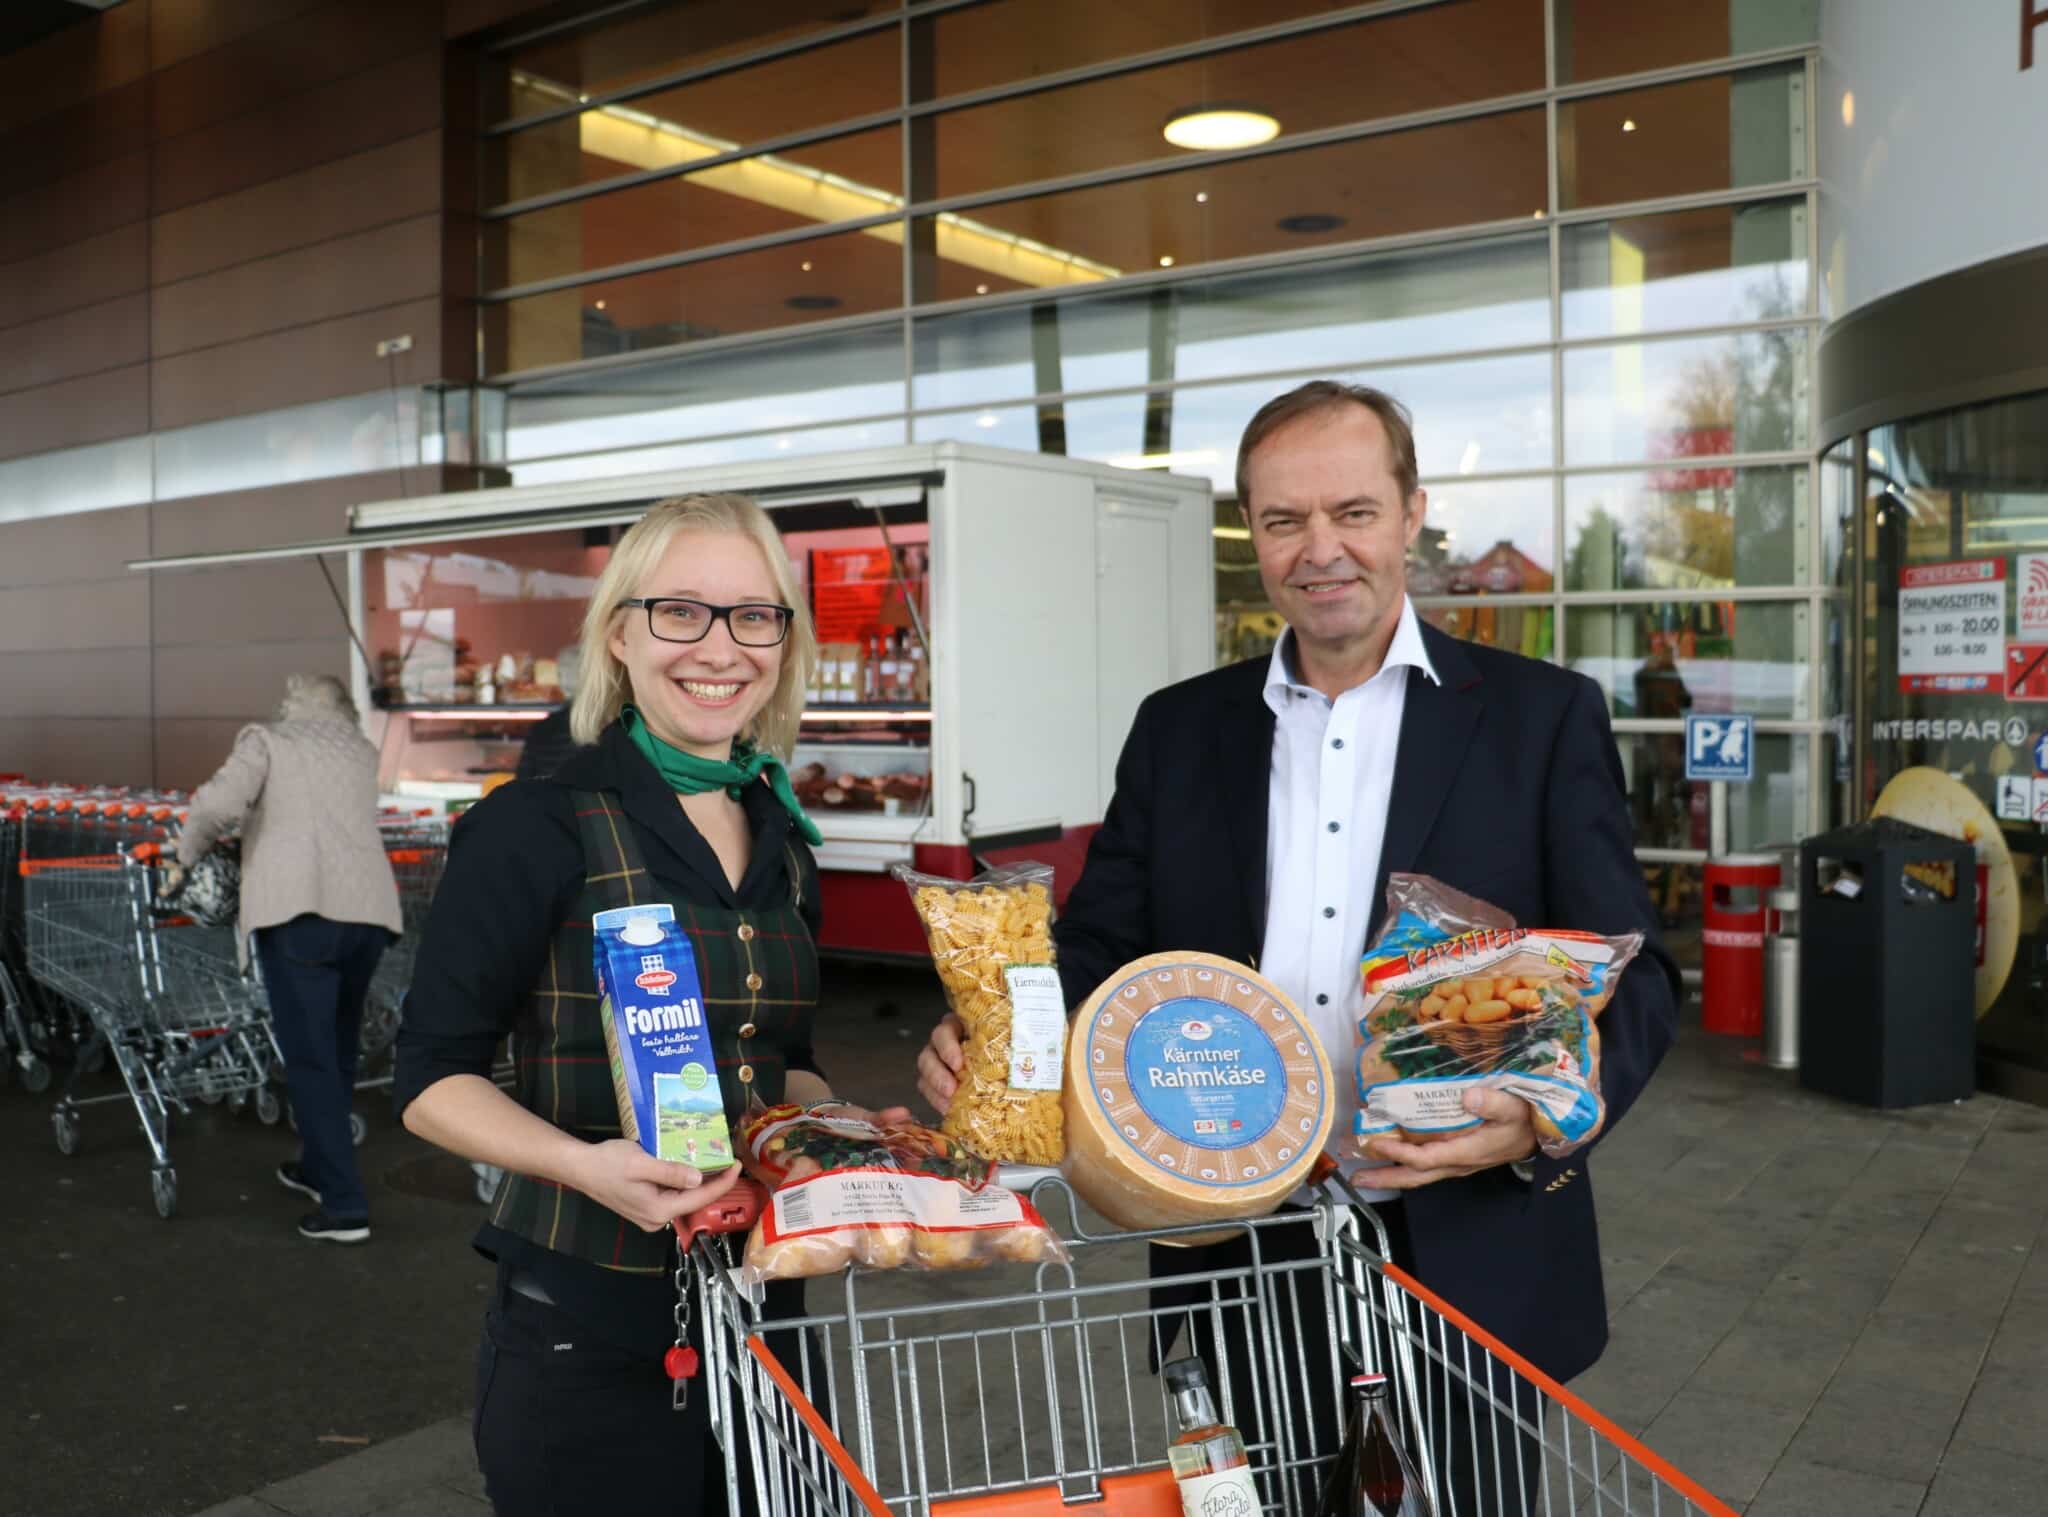 LK-Präsident Johann Mößler und Landjugendreferentin Andrea Walkam informierten die Konsumenten über regionale Lebensmittel und die Bedeutung heimischer Gütesiegel.